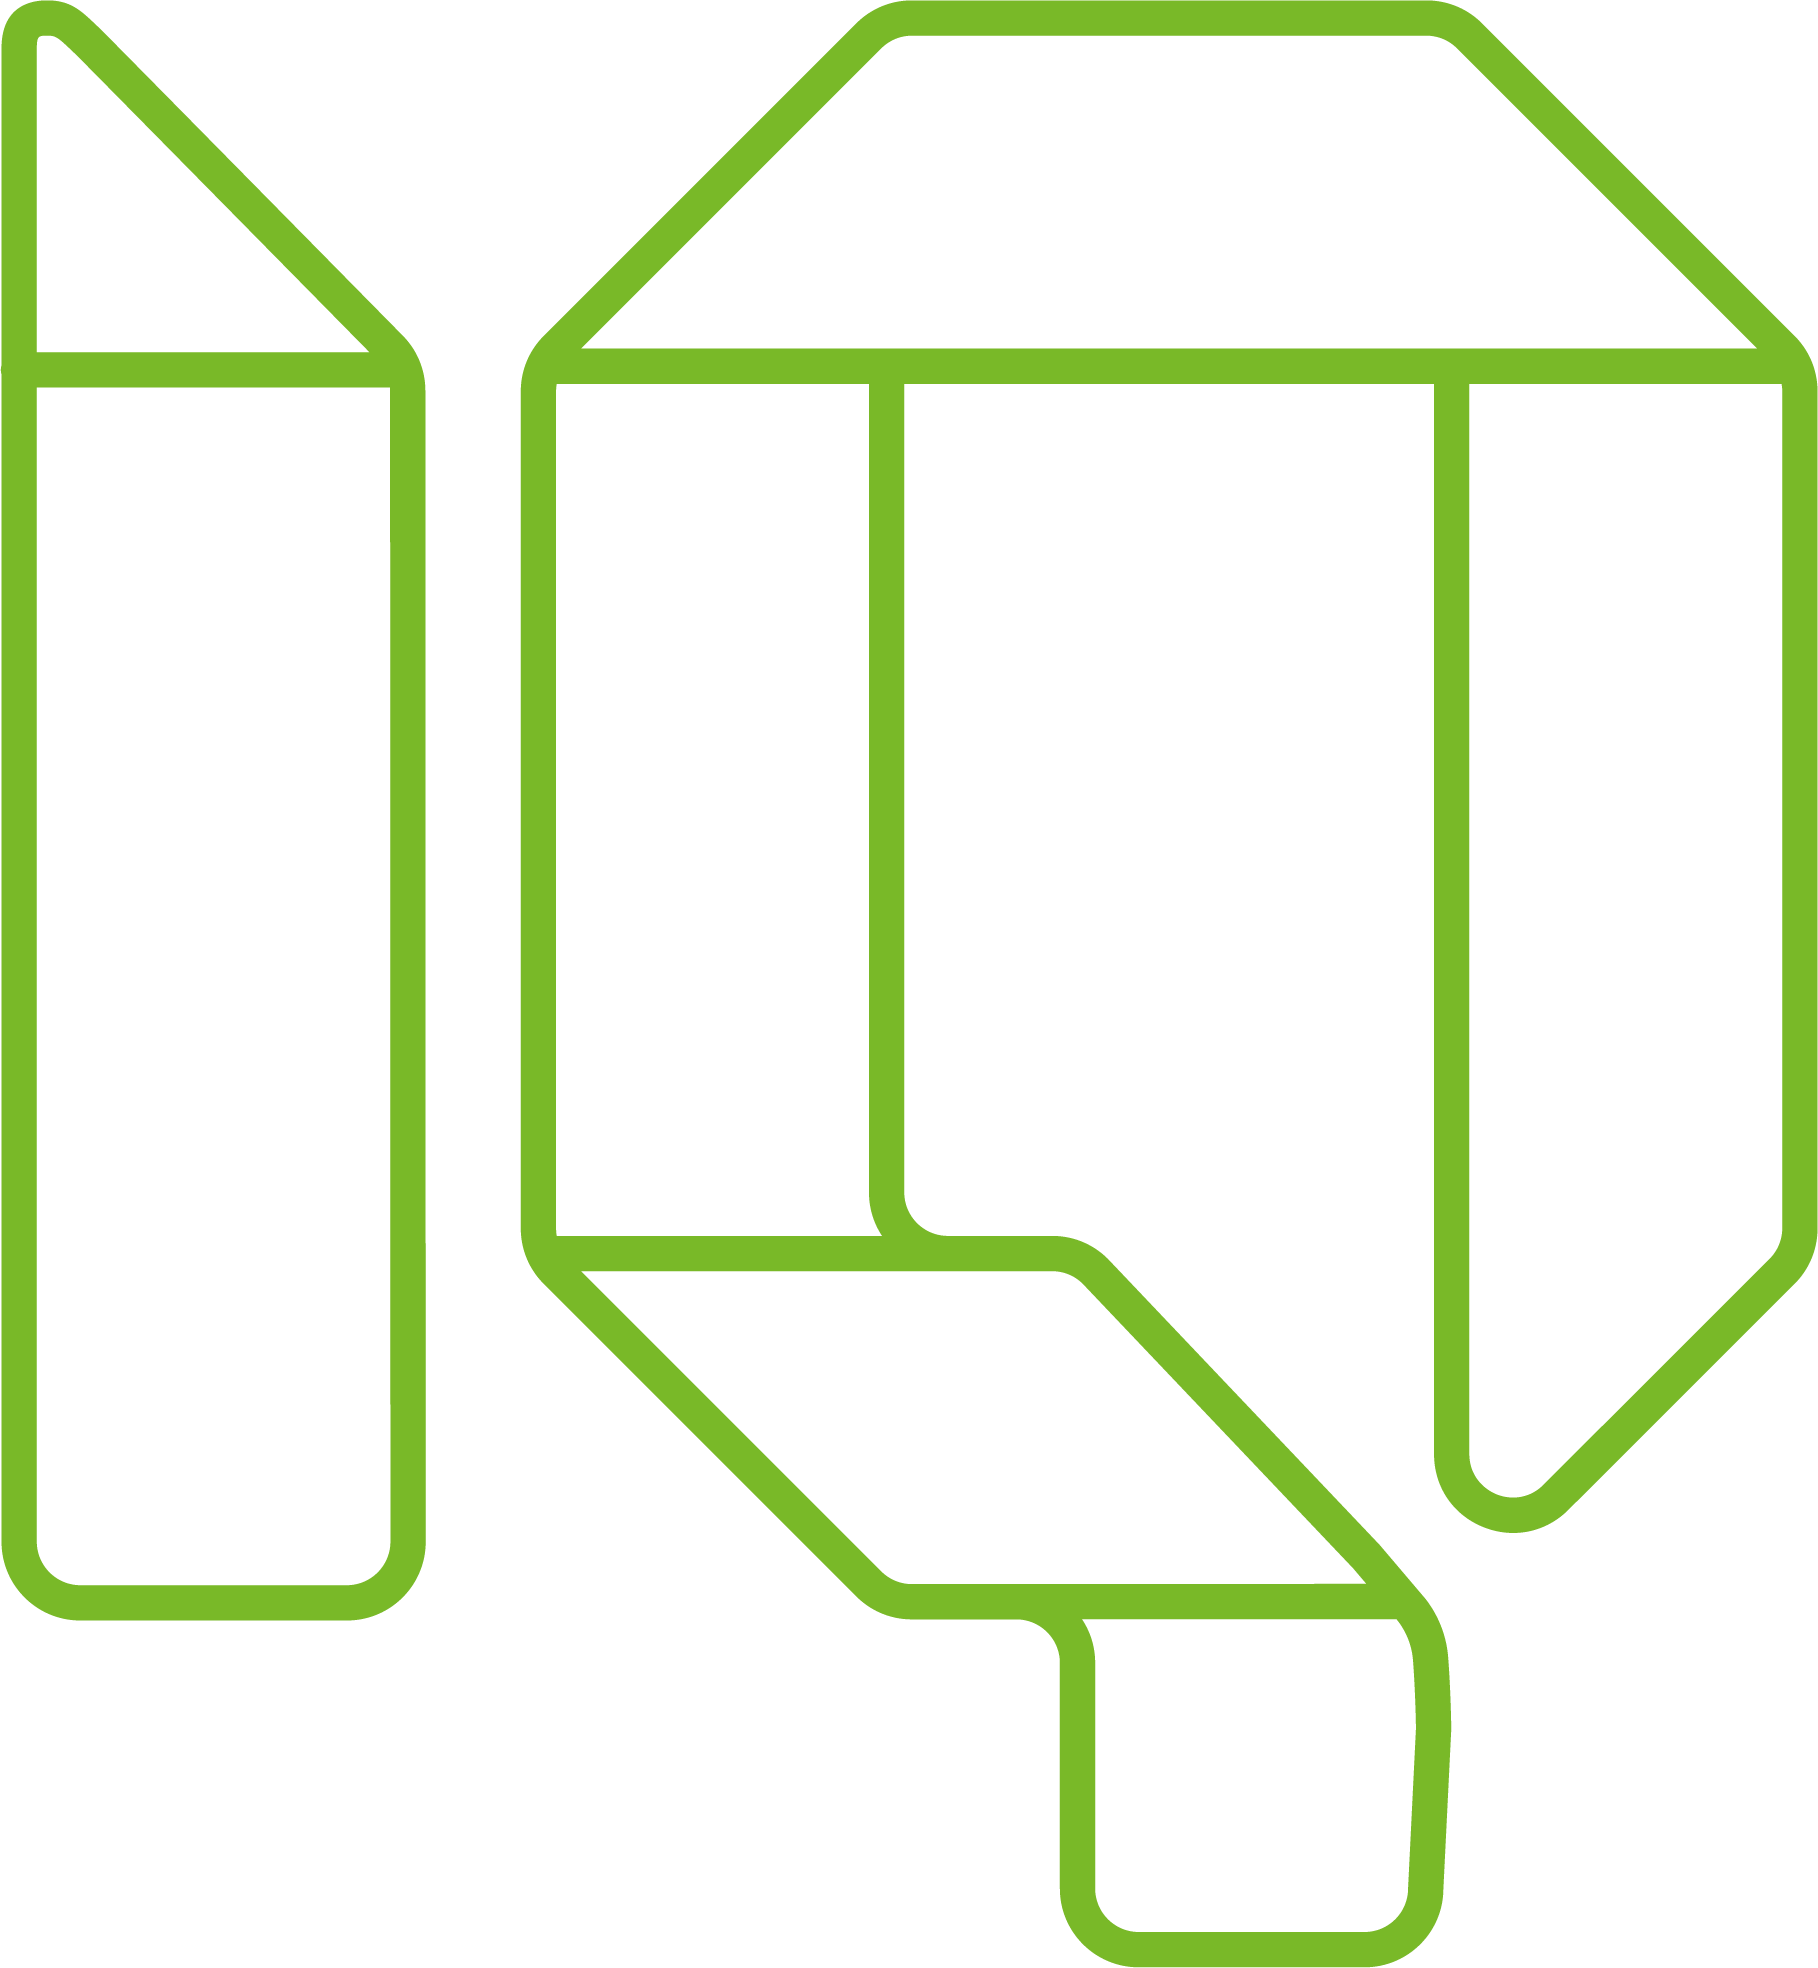 IQ_Logo